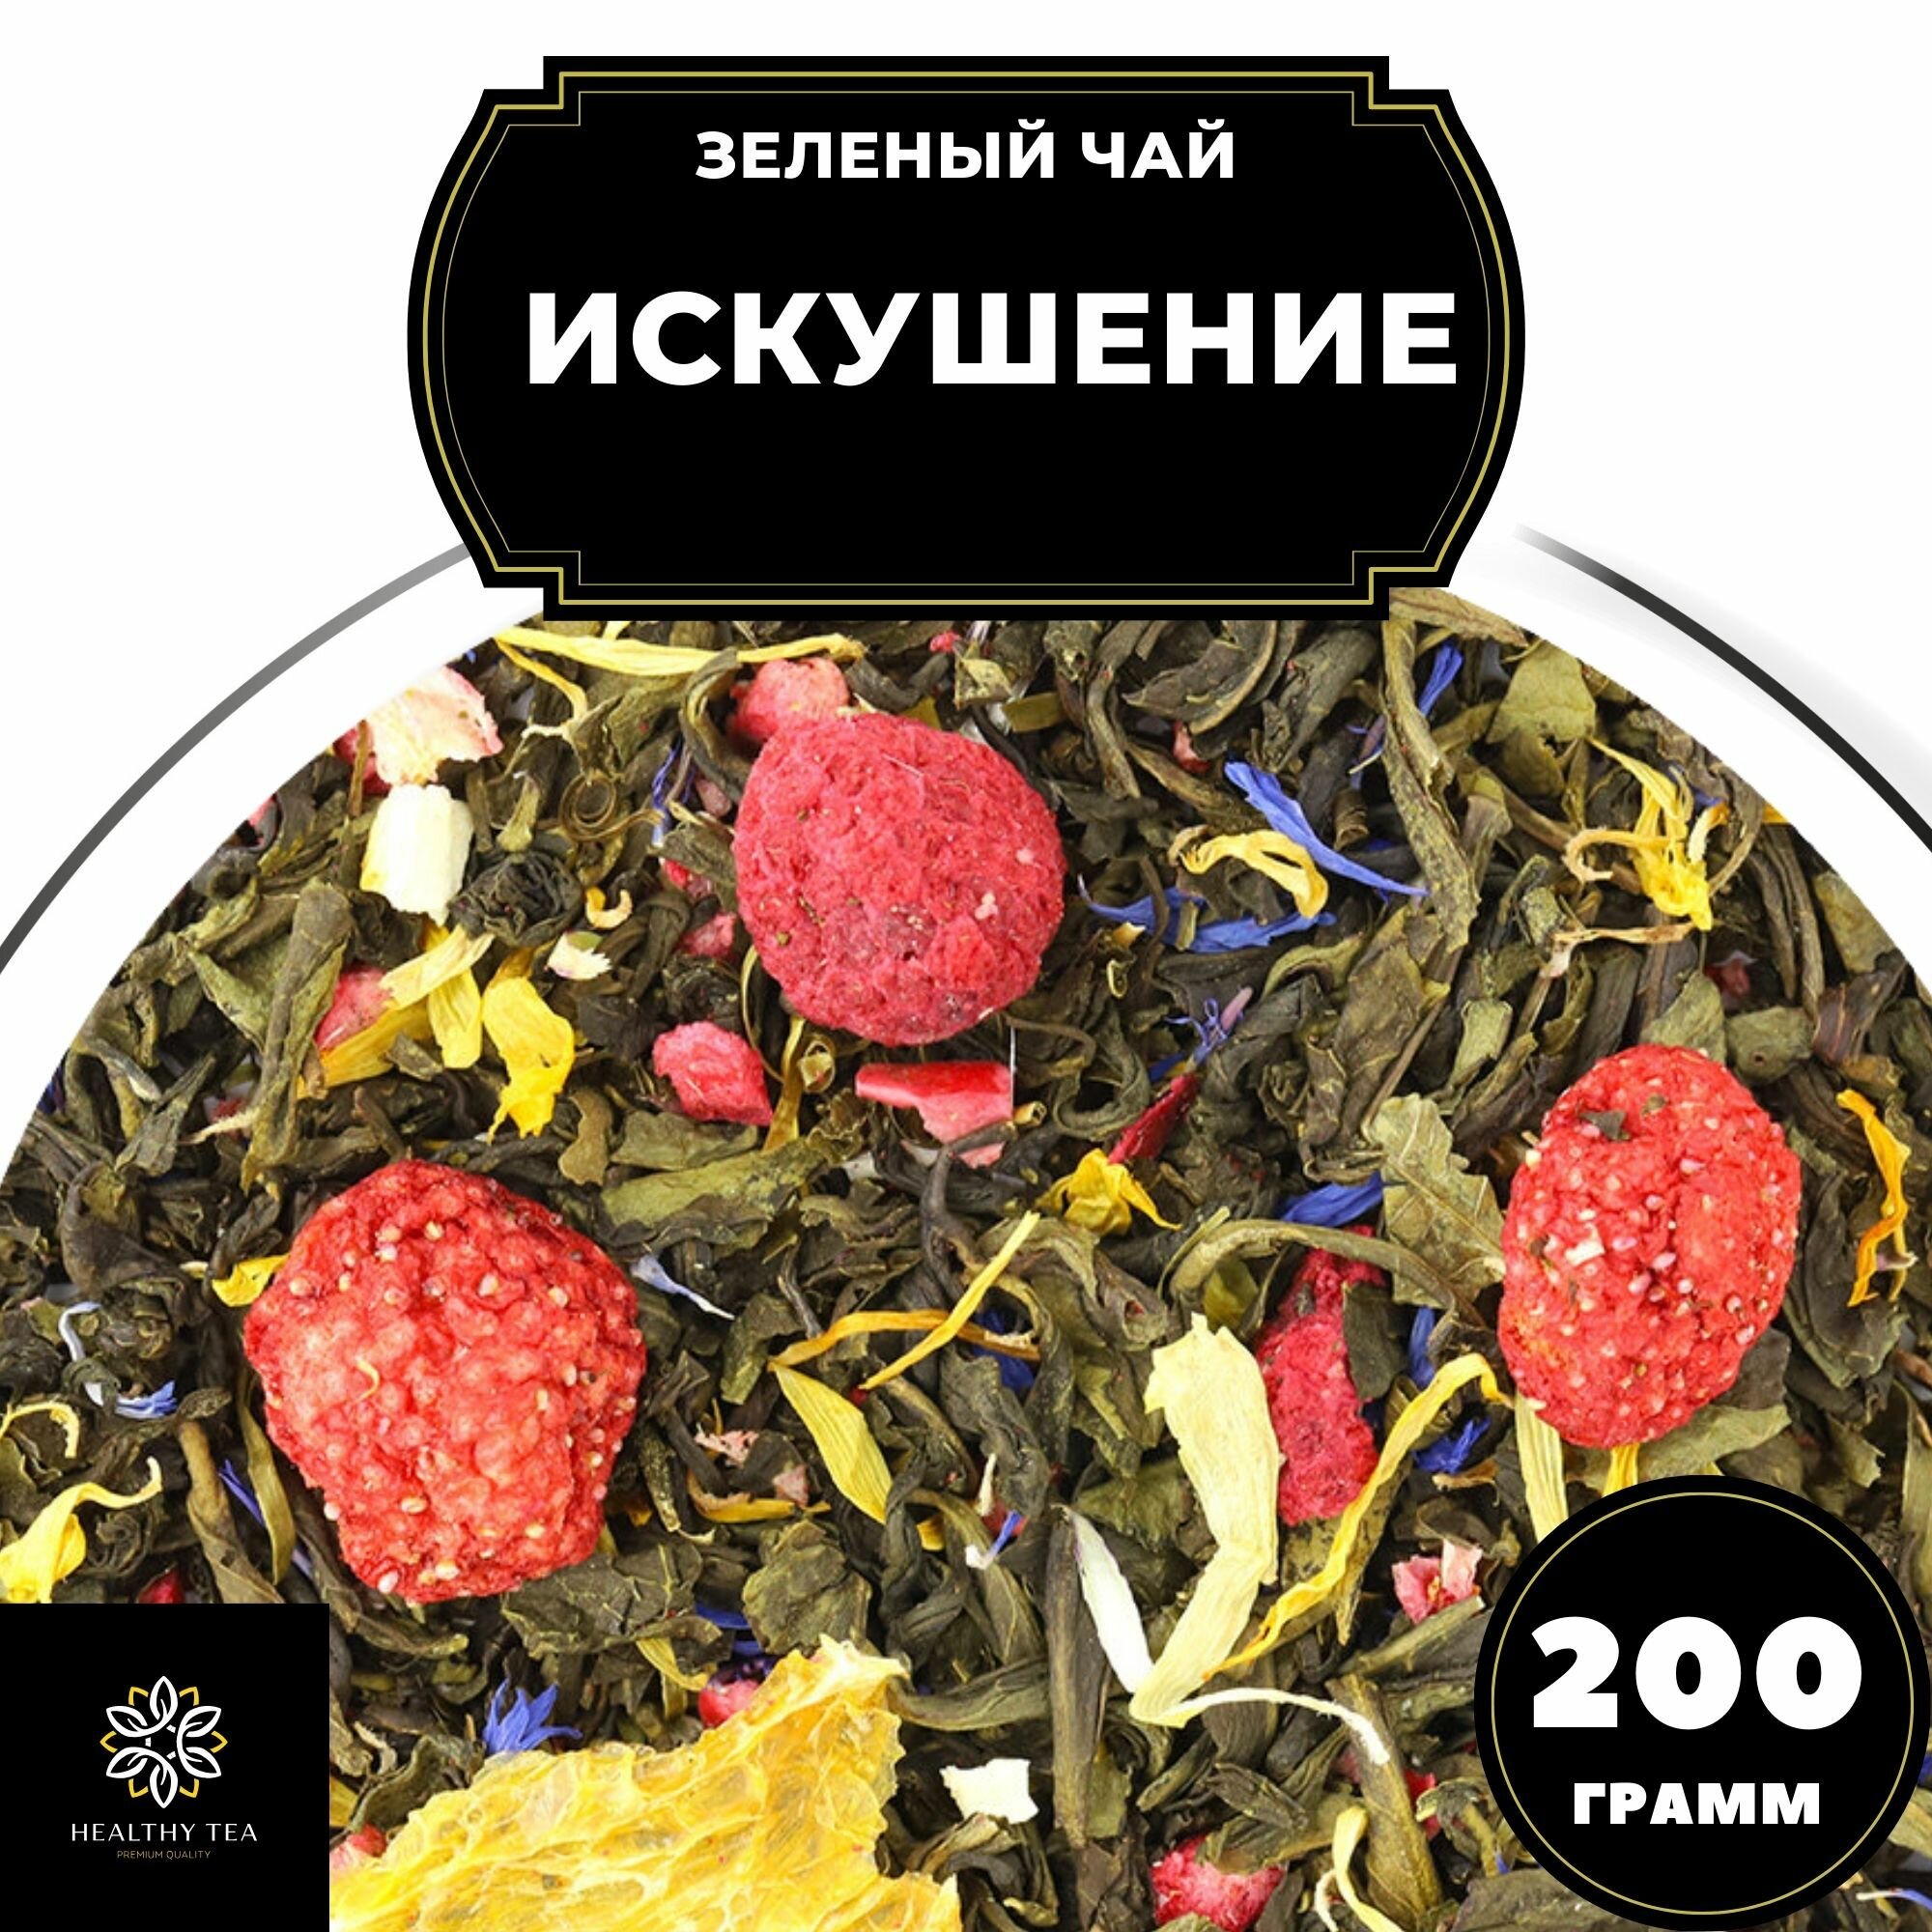 Китайский Зеленый чай с клубникой, апельсином и клюквой Искушение Полезный чай / HEALTHY TEA, 200 г